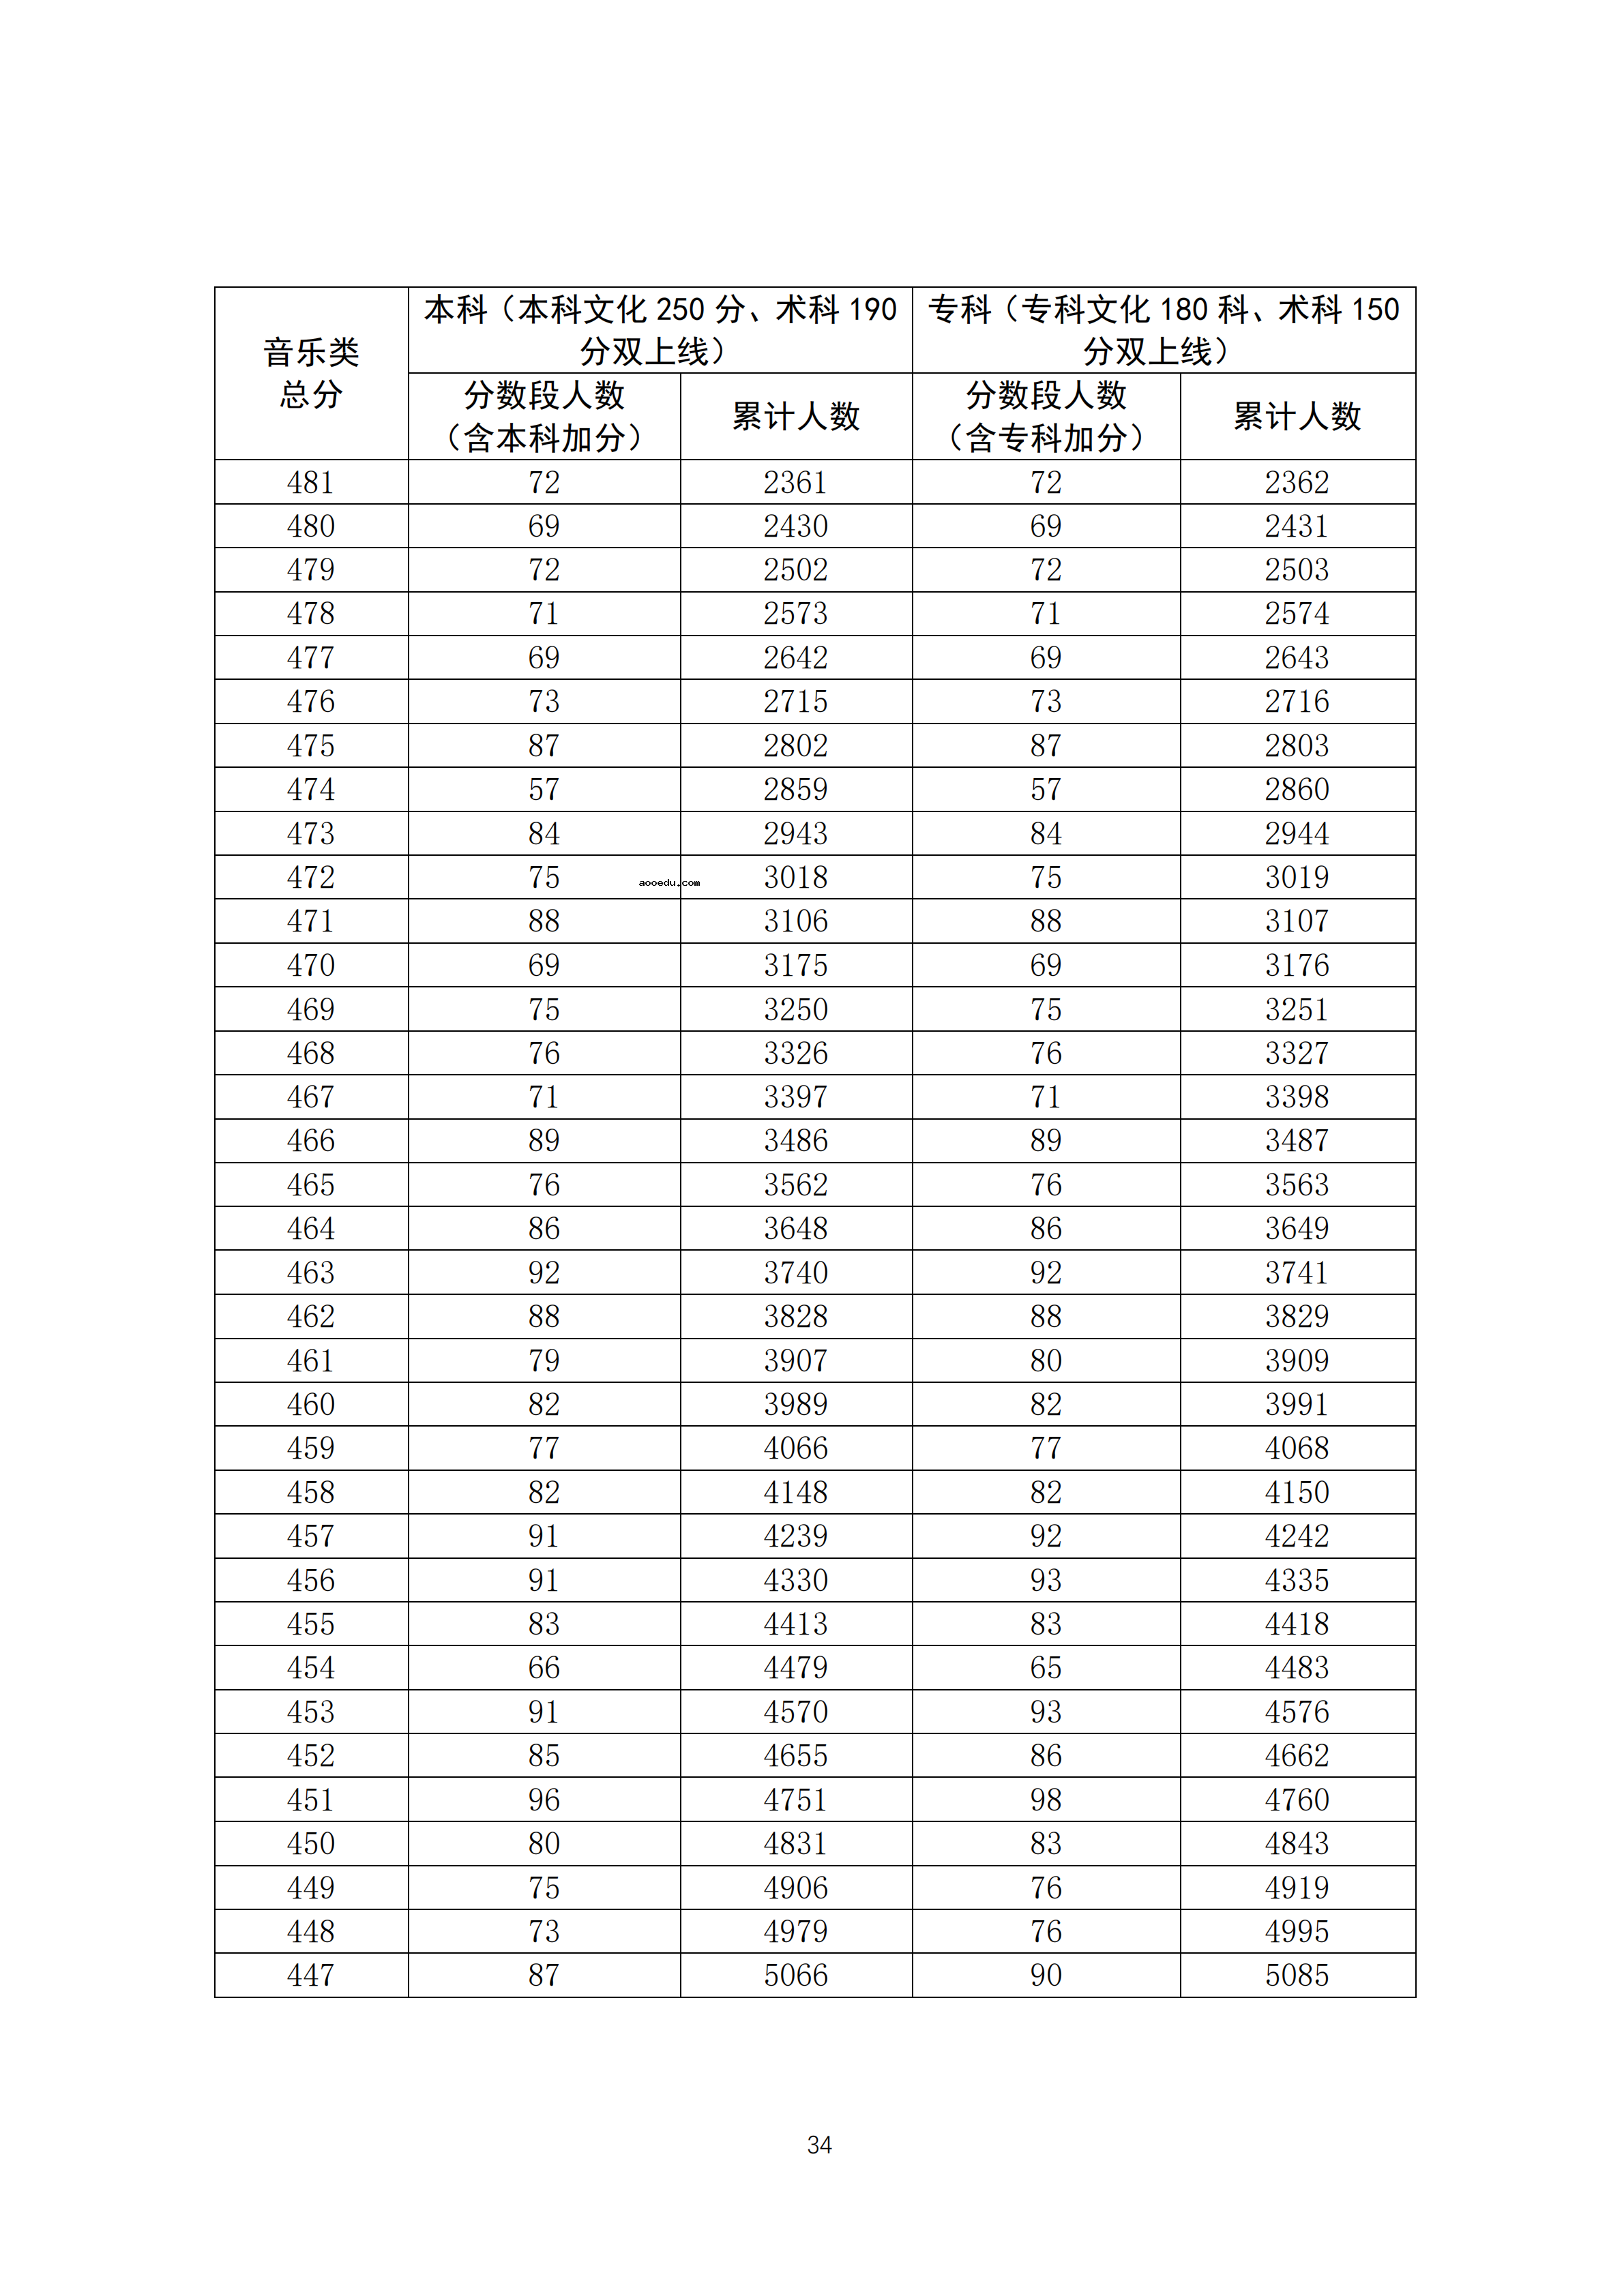 2020广东高考一分一段表 音乐类成绩排名